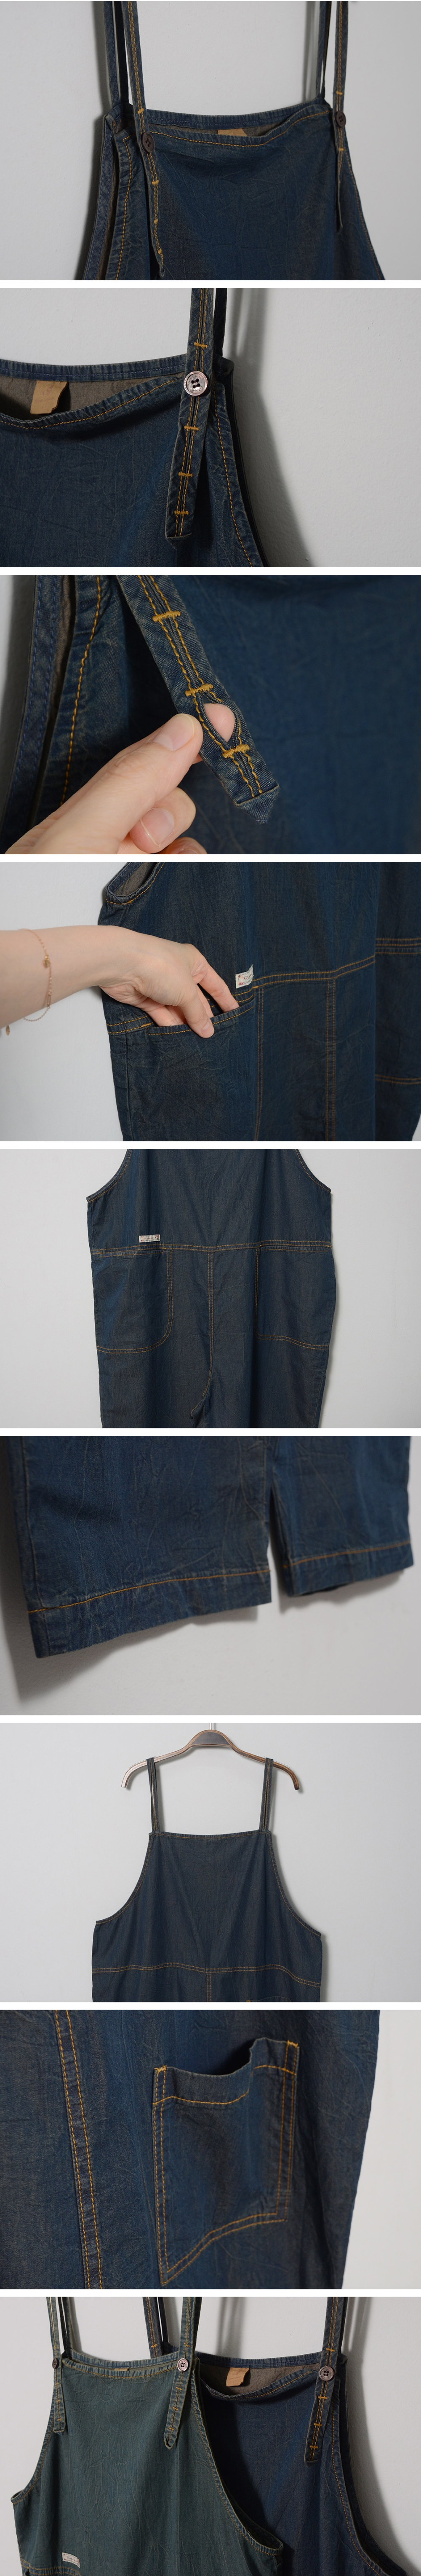 suspenders skirt/pants detail image-S3L3